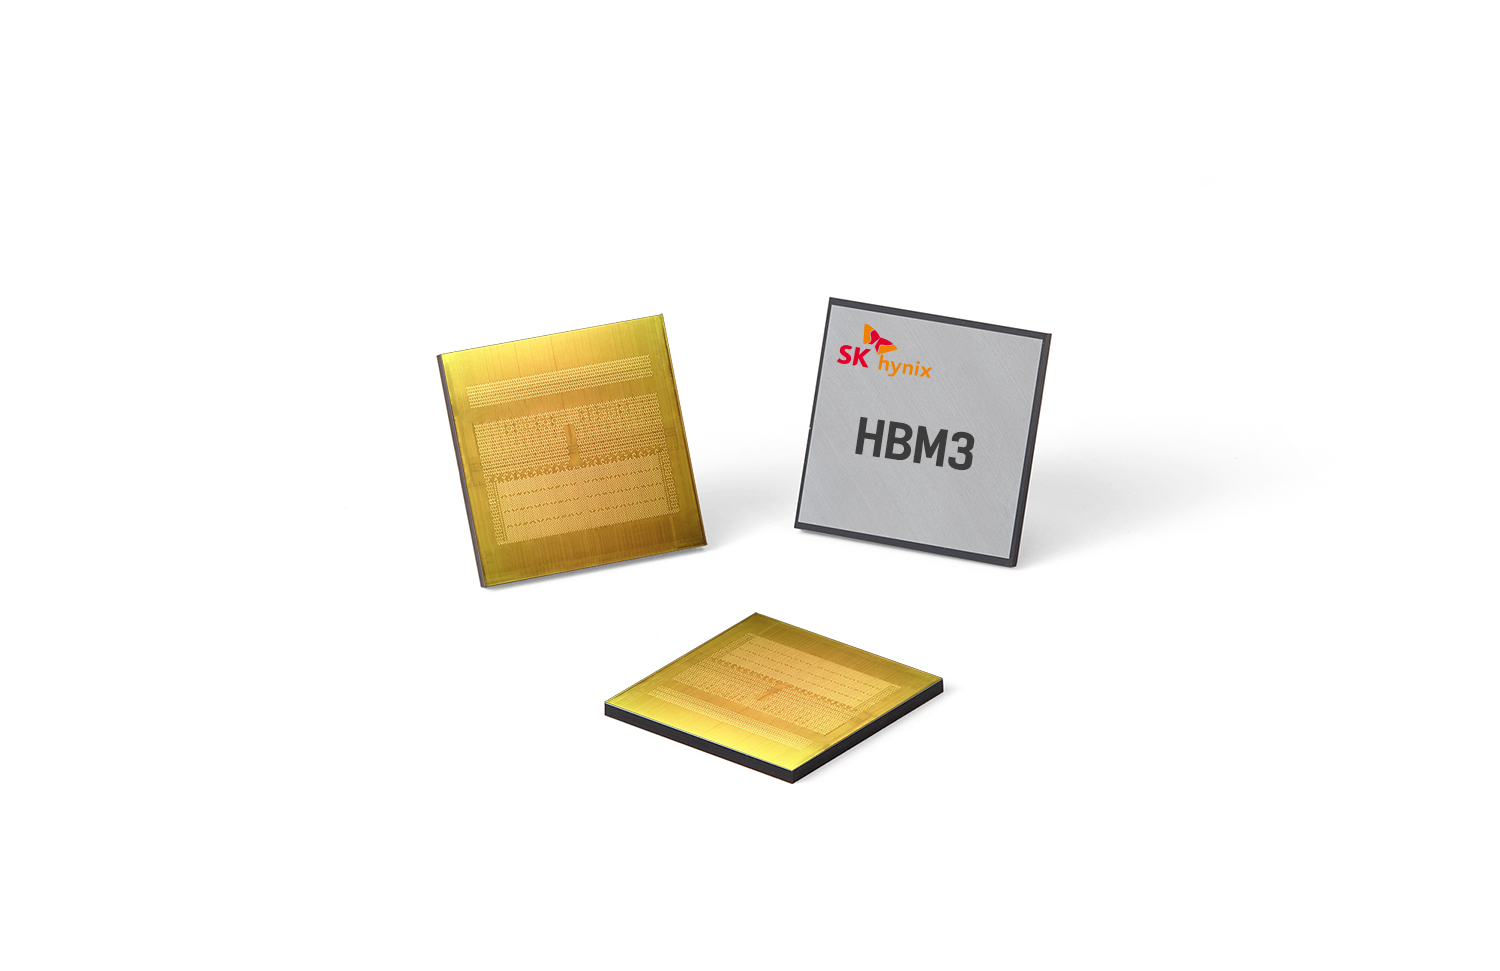 Immagine pubblicata in relazione al seguente contenuto: SK hynix diventa il primo fornitore di NVIDIA relativamente alla memoria HBM3 | Nome immagine: news33370_SK-hynix-HBM3_1.jpg